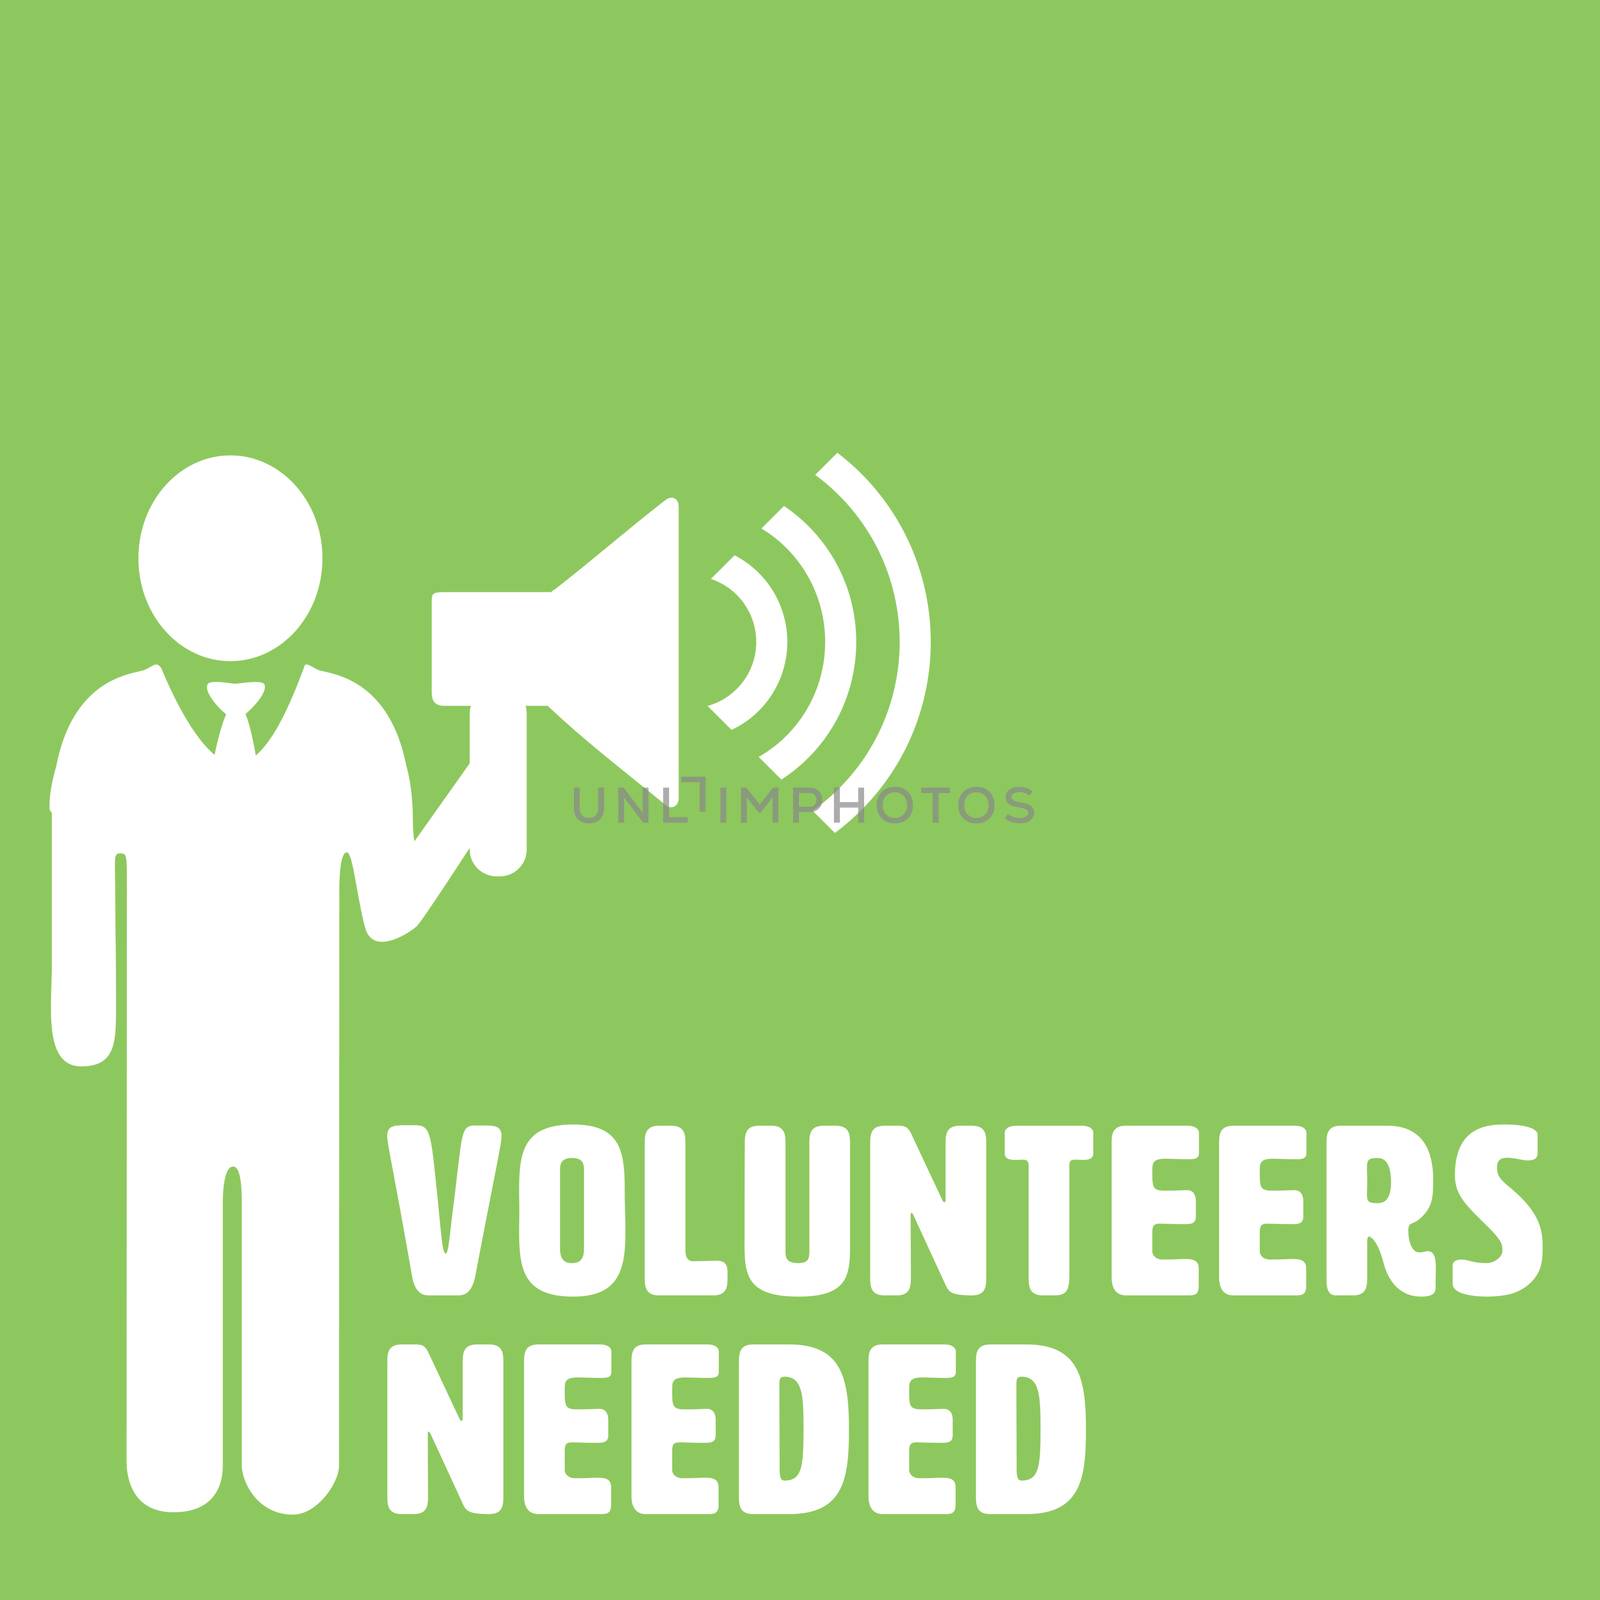 Volunteers needed against green background